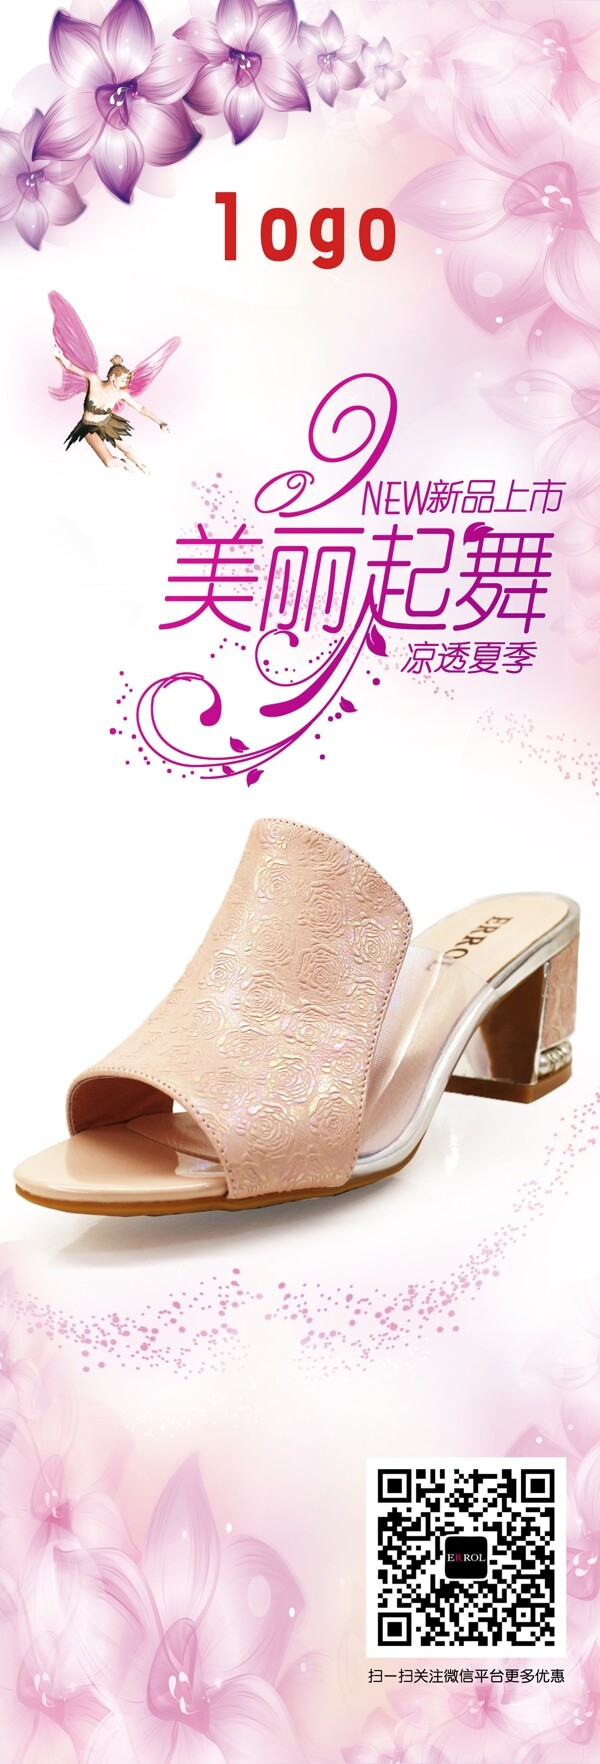 女鞋粉色活动商场海报